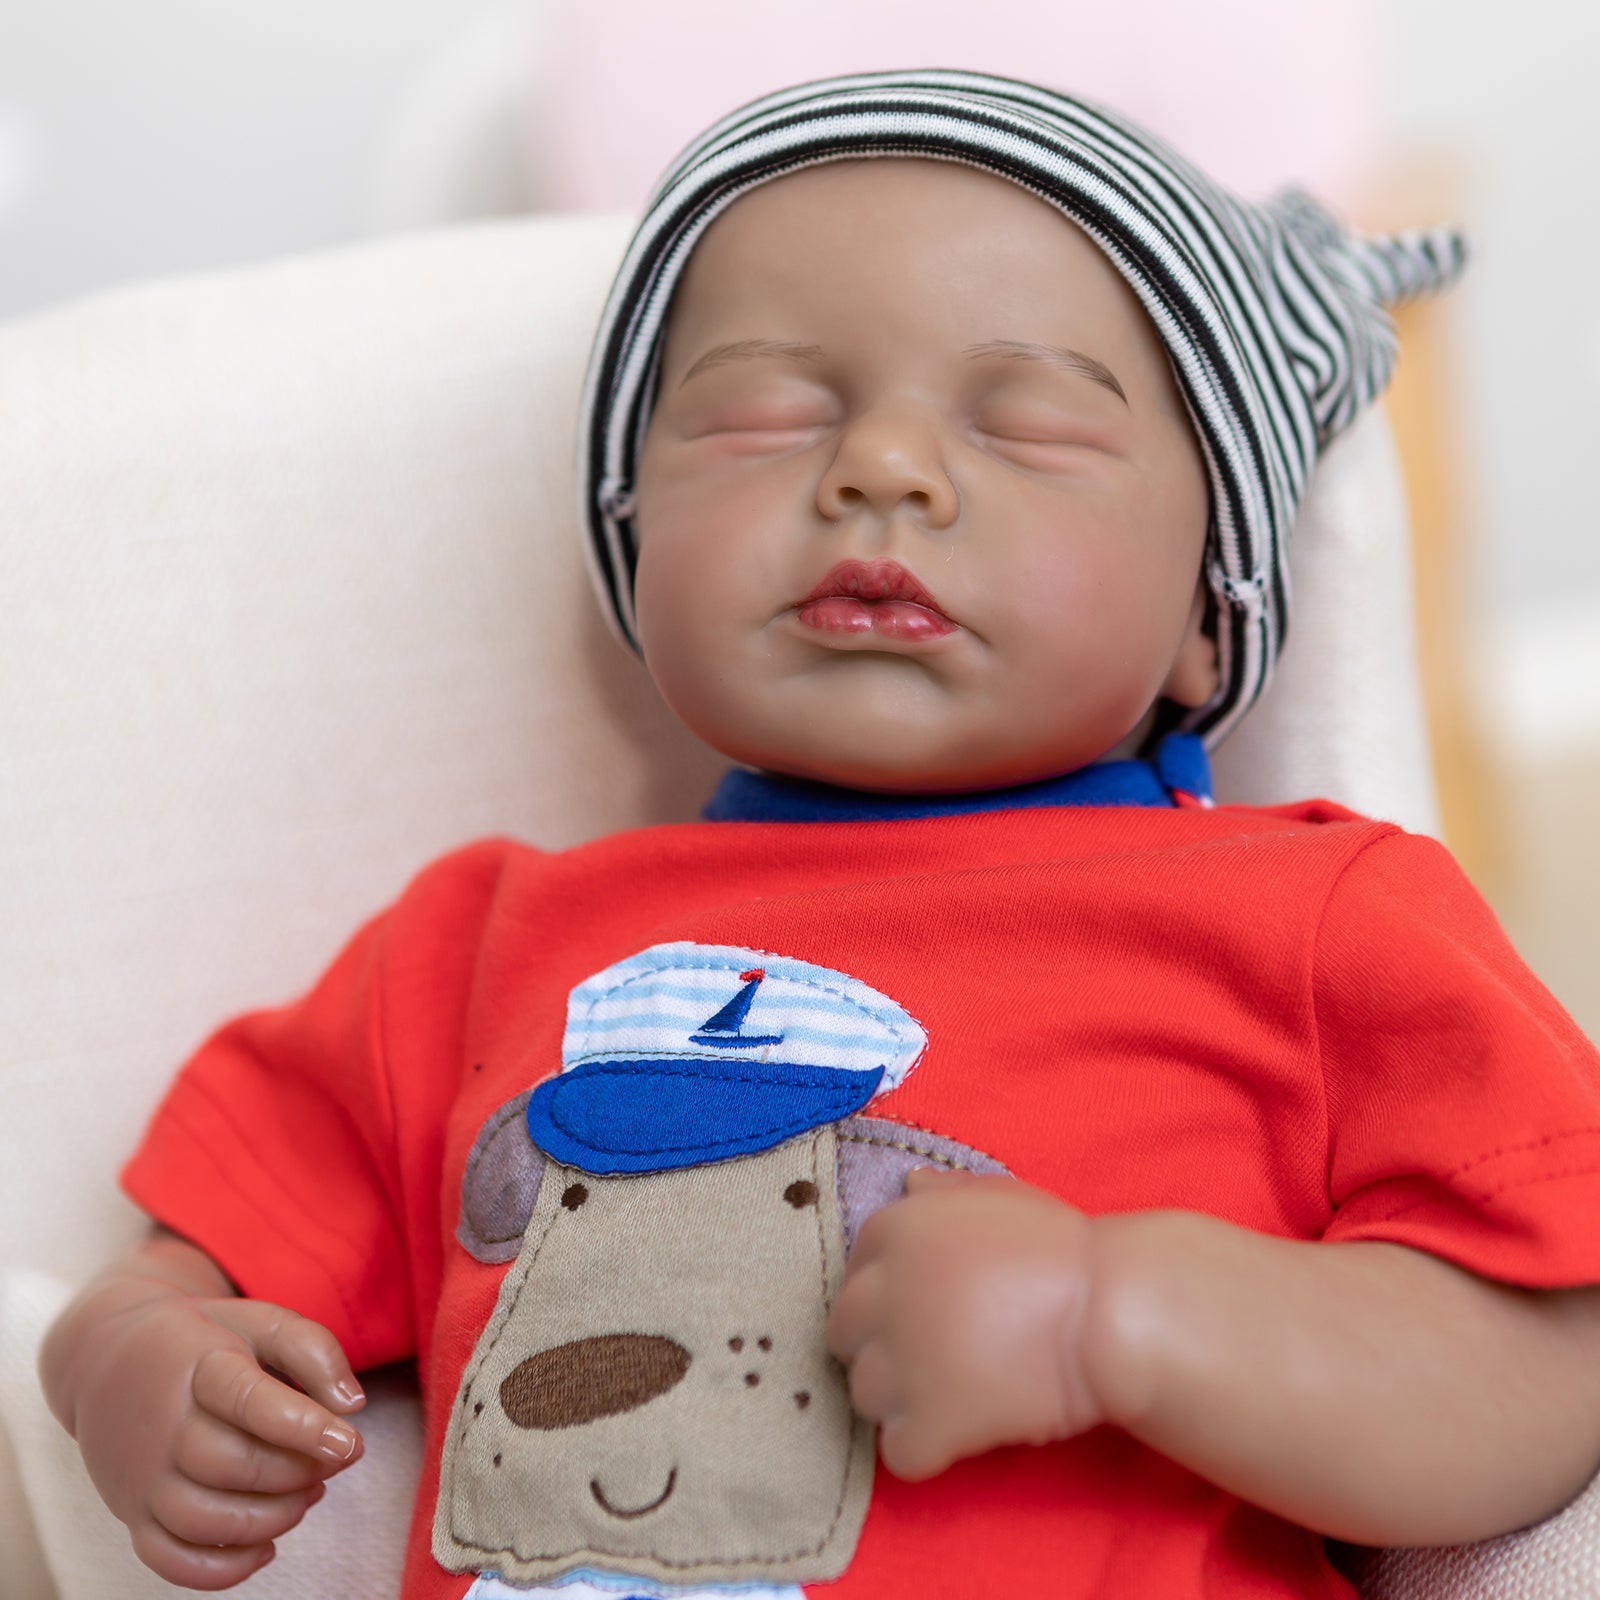 Sleeping Boy Lifelike Reborn Baby Dolls That Look Real 20 Inch Silicone Realistic Newborn Babies Dolls Popular Limited Edition Doll